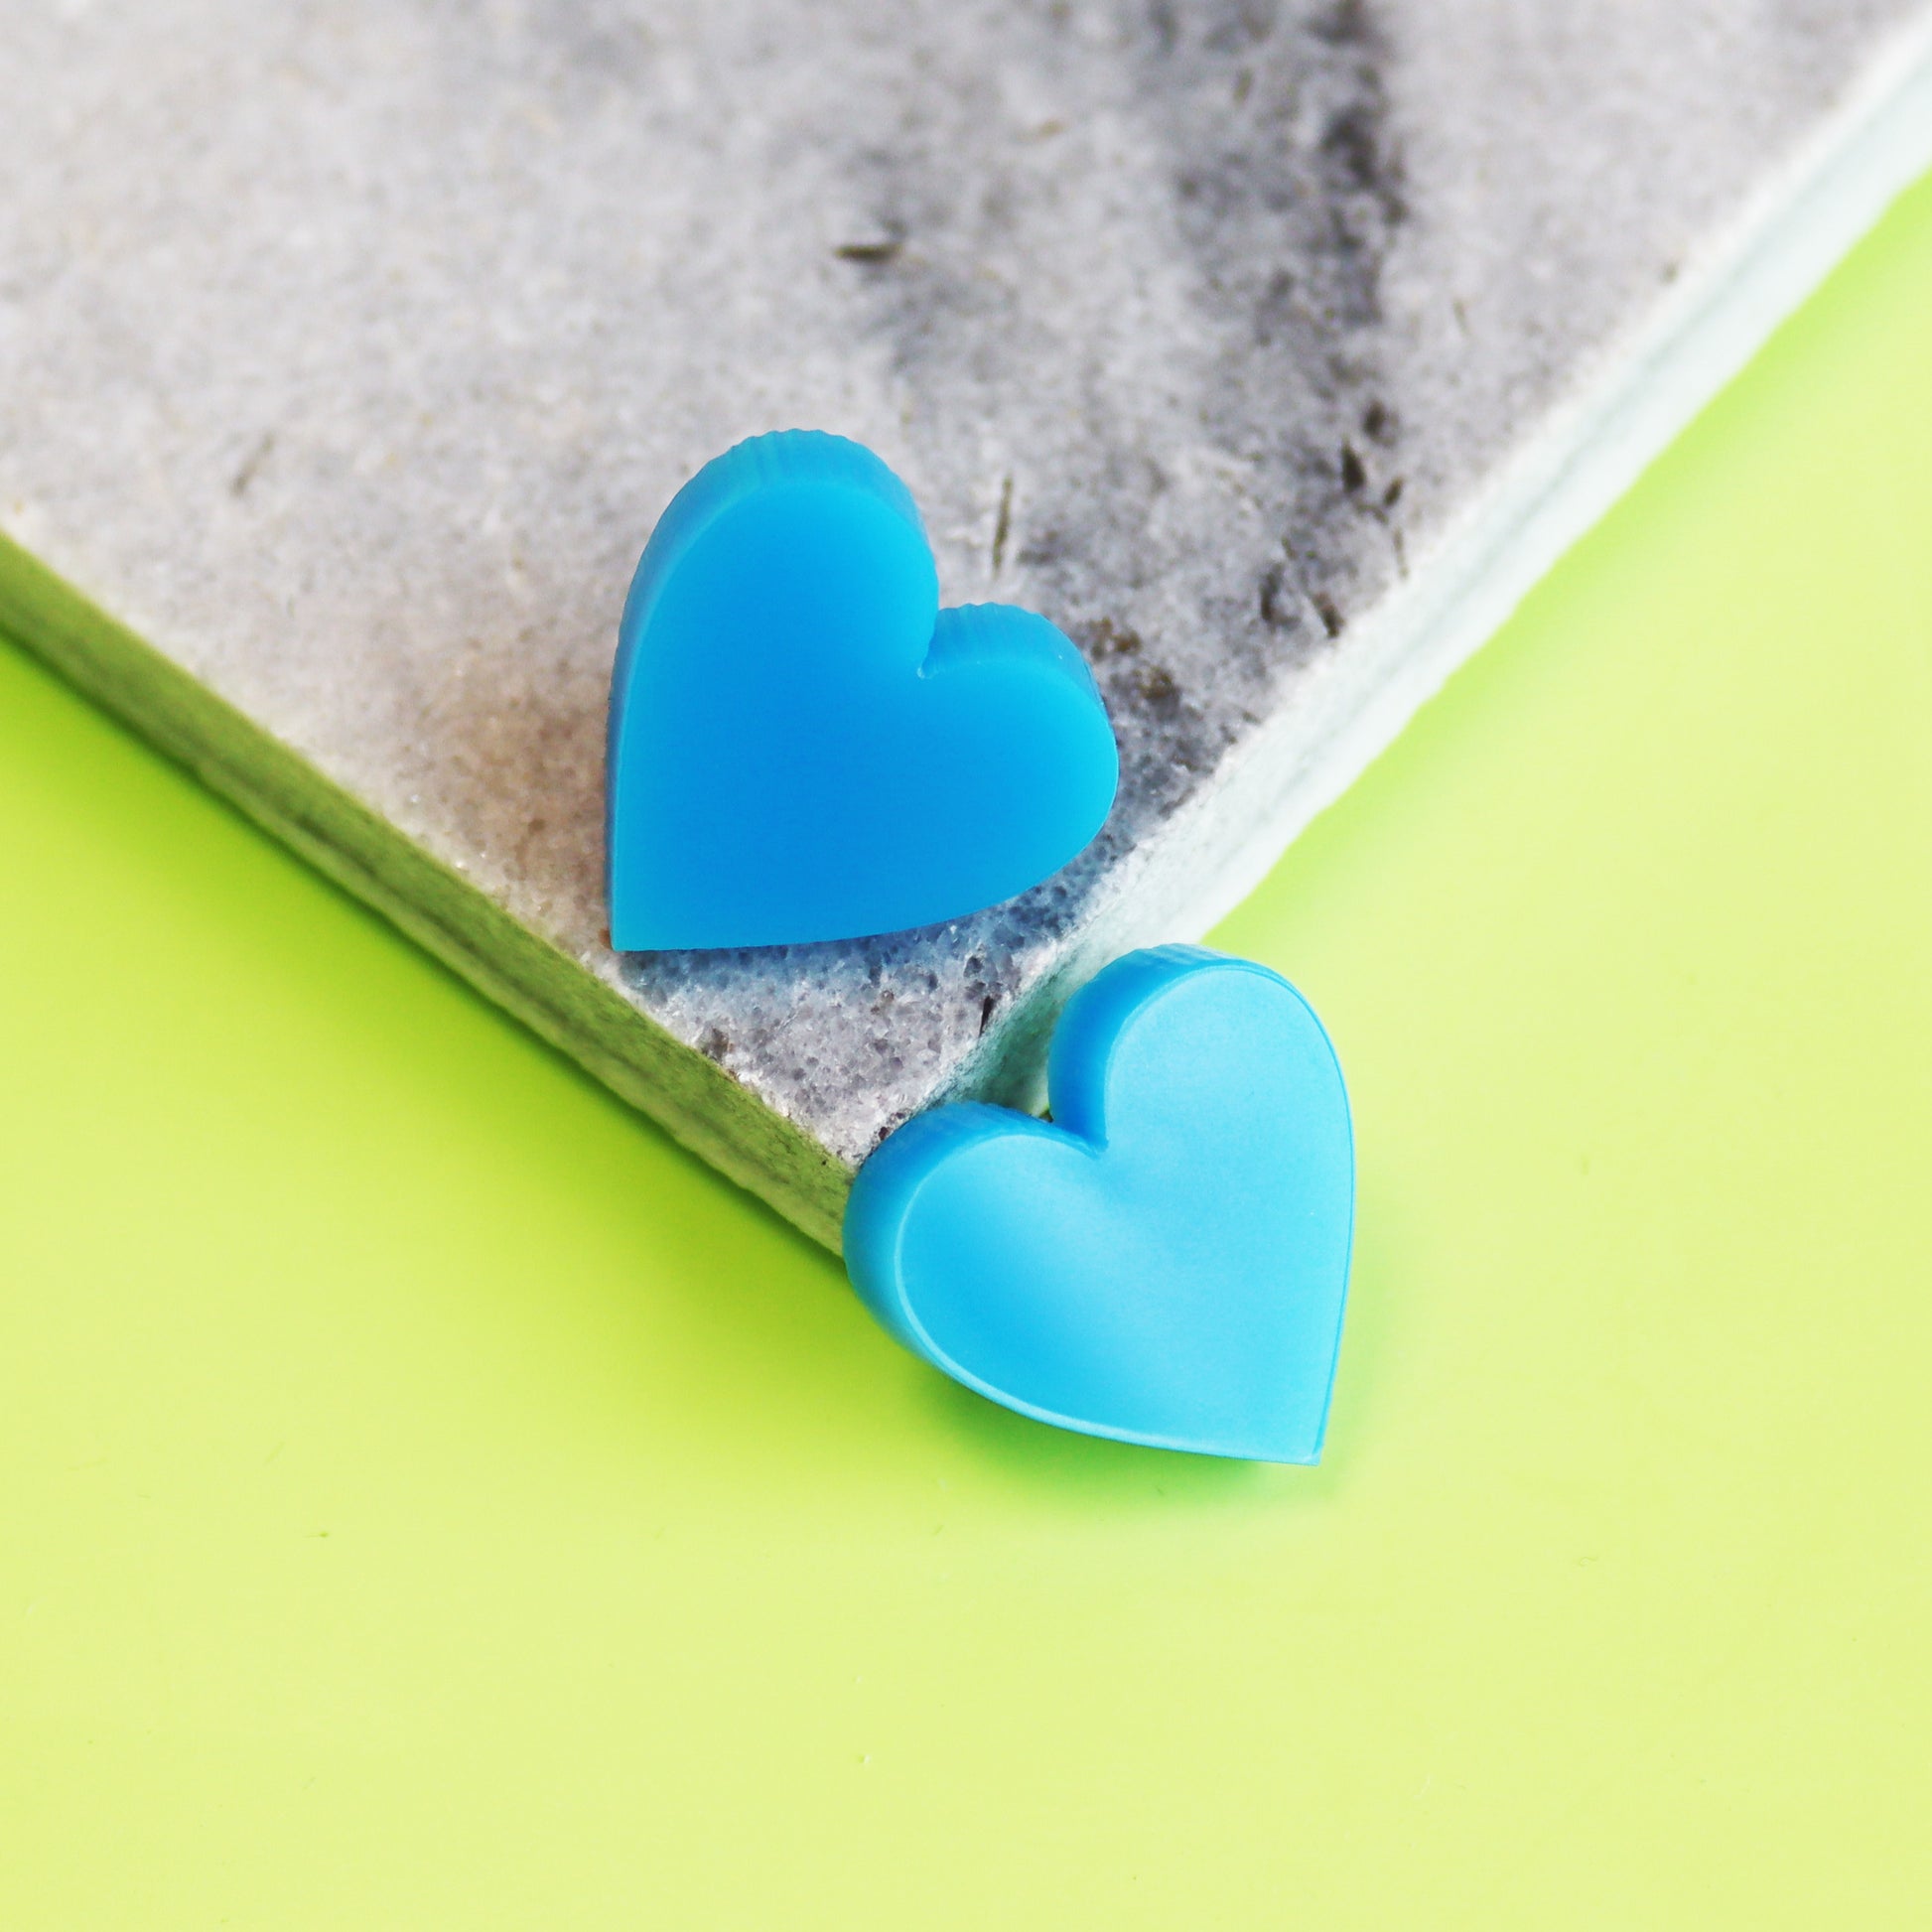 acrylic blue stud heart earrings shown in marble coaster